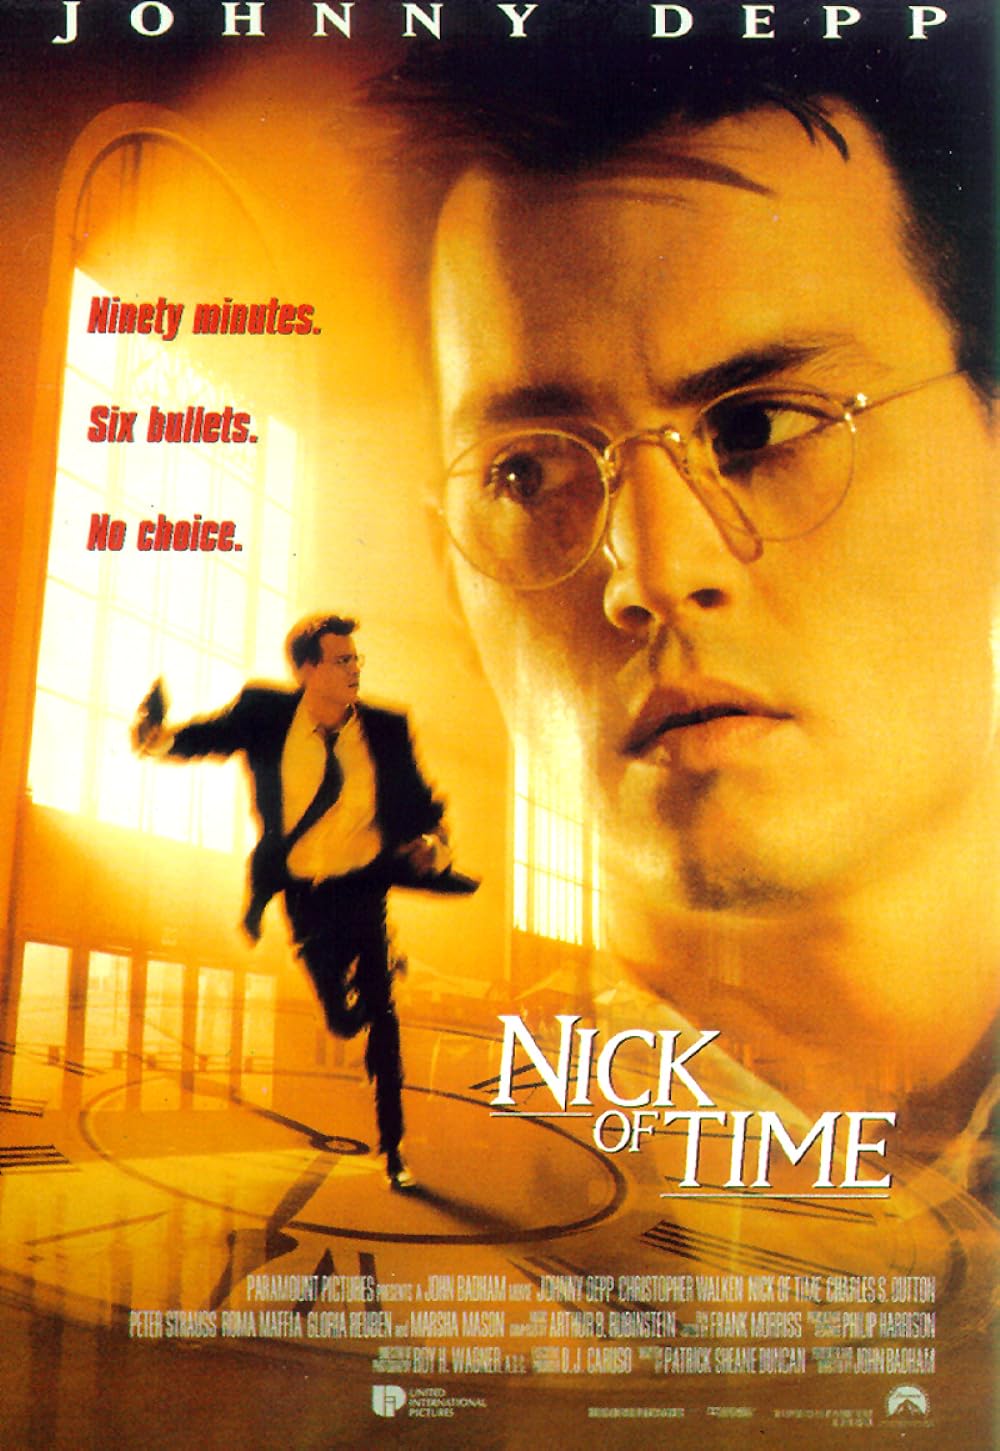 Nick of Time (1995) 192Kbps 23.976Fps 48Khz 2.0Ch DigitalTV Turkish Audio TAC